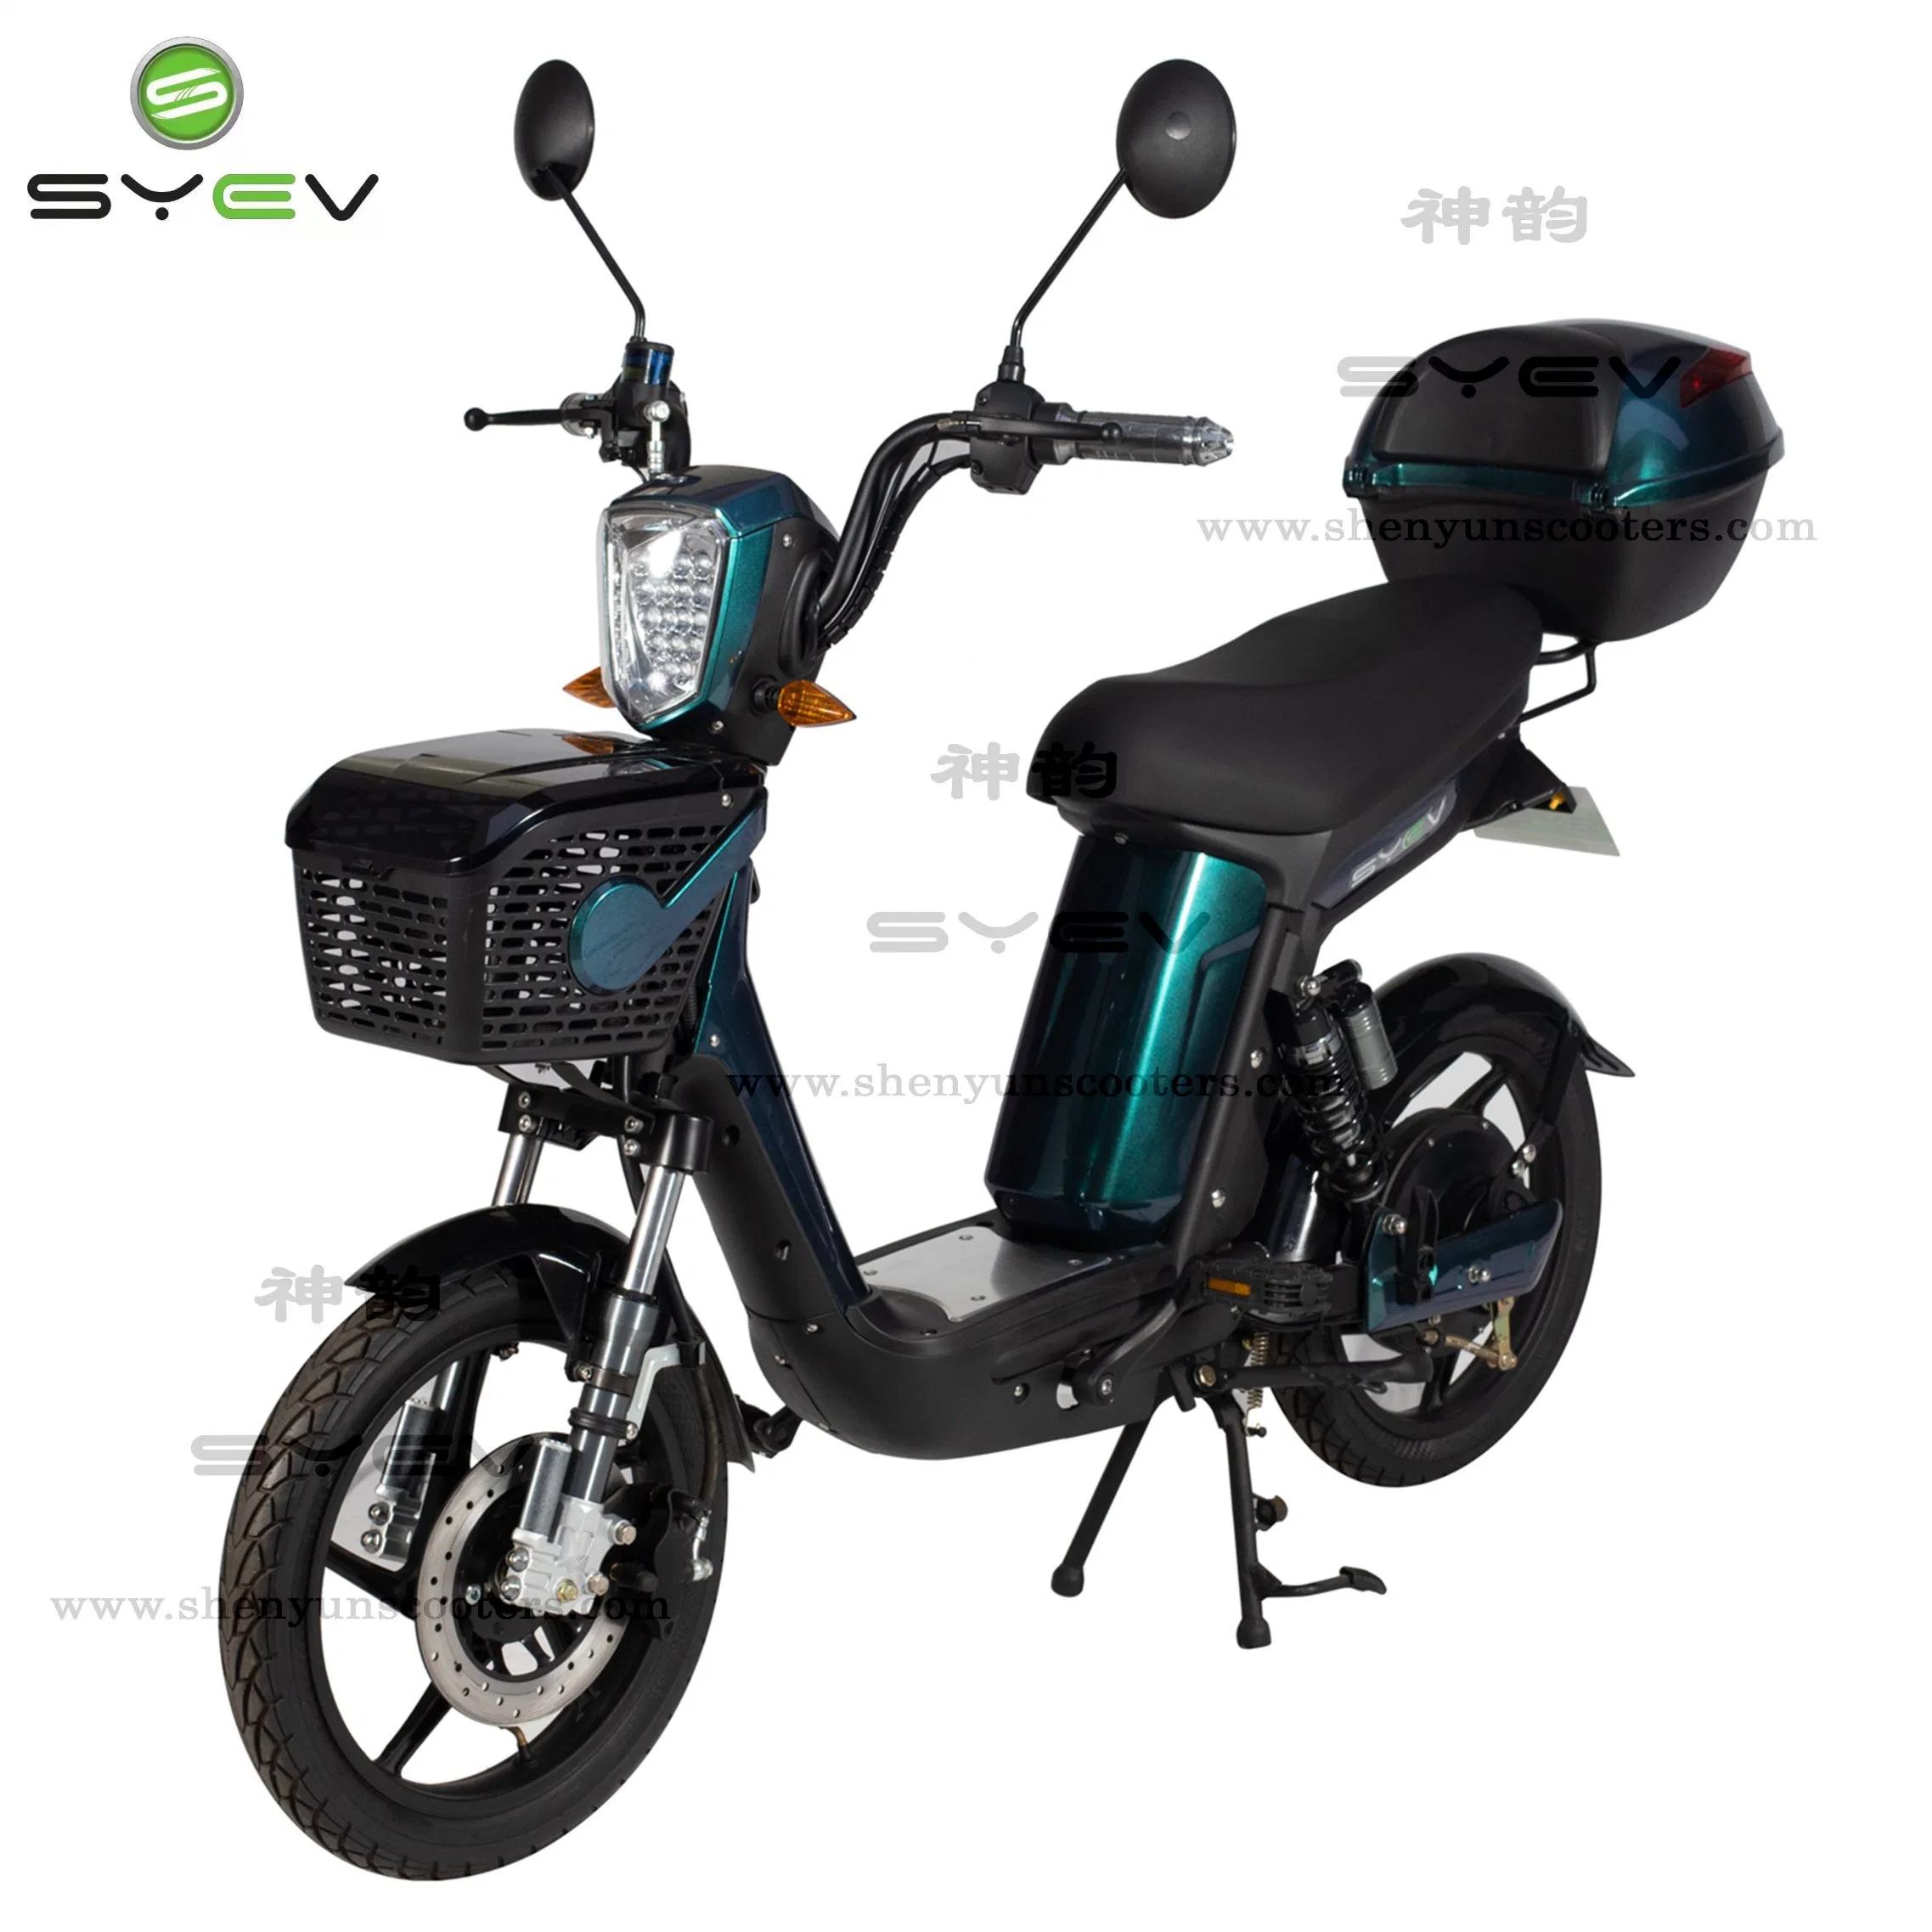 مصنع بالجملة CE ميني سباق الدراجات النارية سعر رخيص 2 عجلة خارج الطرق الدراجة البخارية 48V 500W مركبة الحركية الكهربائية الدراجة الكهربائية مع بطارية قابلة للإزالة